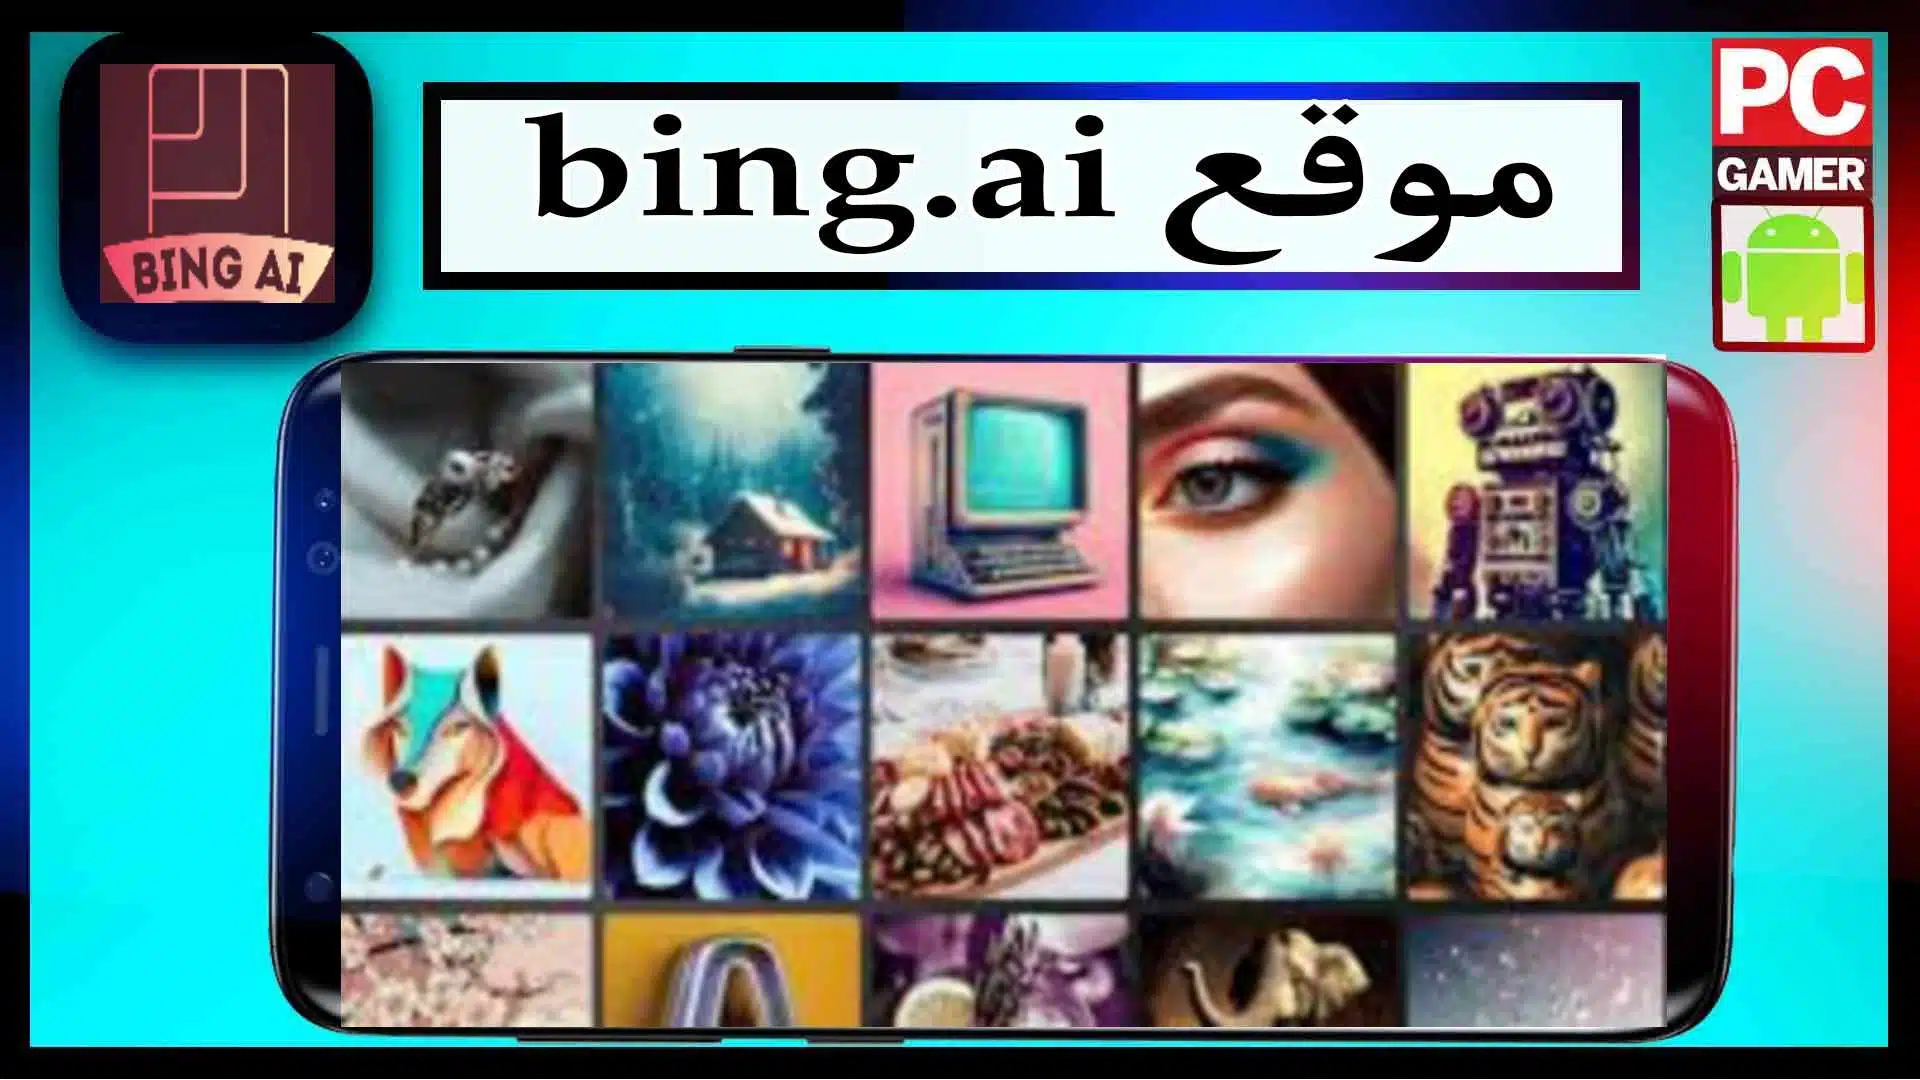 قم بتنزيل موقع bing ai image create باستخدام الصور ذات الذكاء الاصطناعي